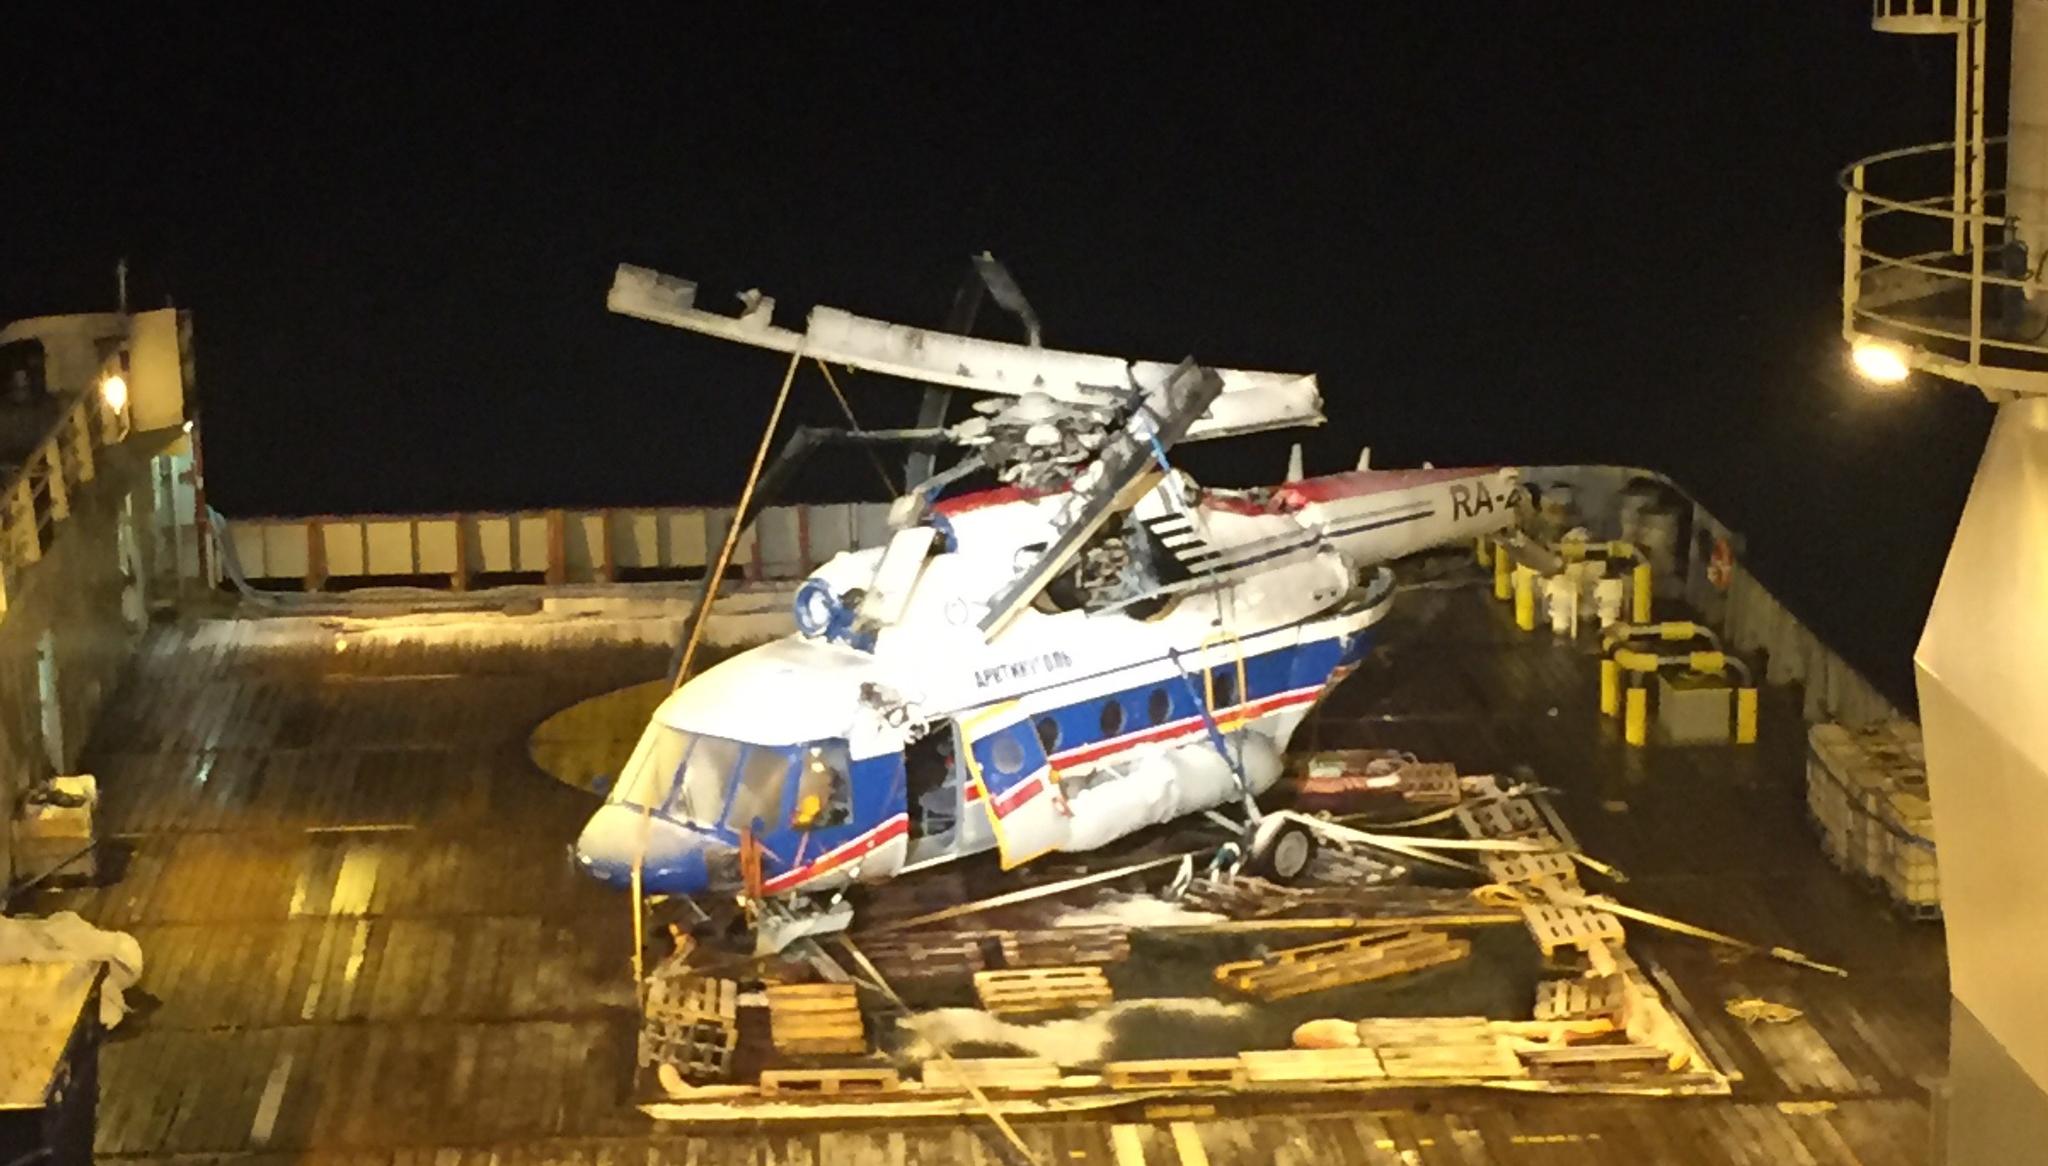 Helikopteret som styrtet i sjøen utenfor Barentsburg 26. oktober i fjor med åtte personer om bord, ble funnet på over 200 meters dyp tre dager etter ulykken. Én person ble samme kveld funnet omkommet et stykke fra vraket. Den 4. november ble vraket hevet (bildet). Det var ingen omkomne inne i helikopteret. 